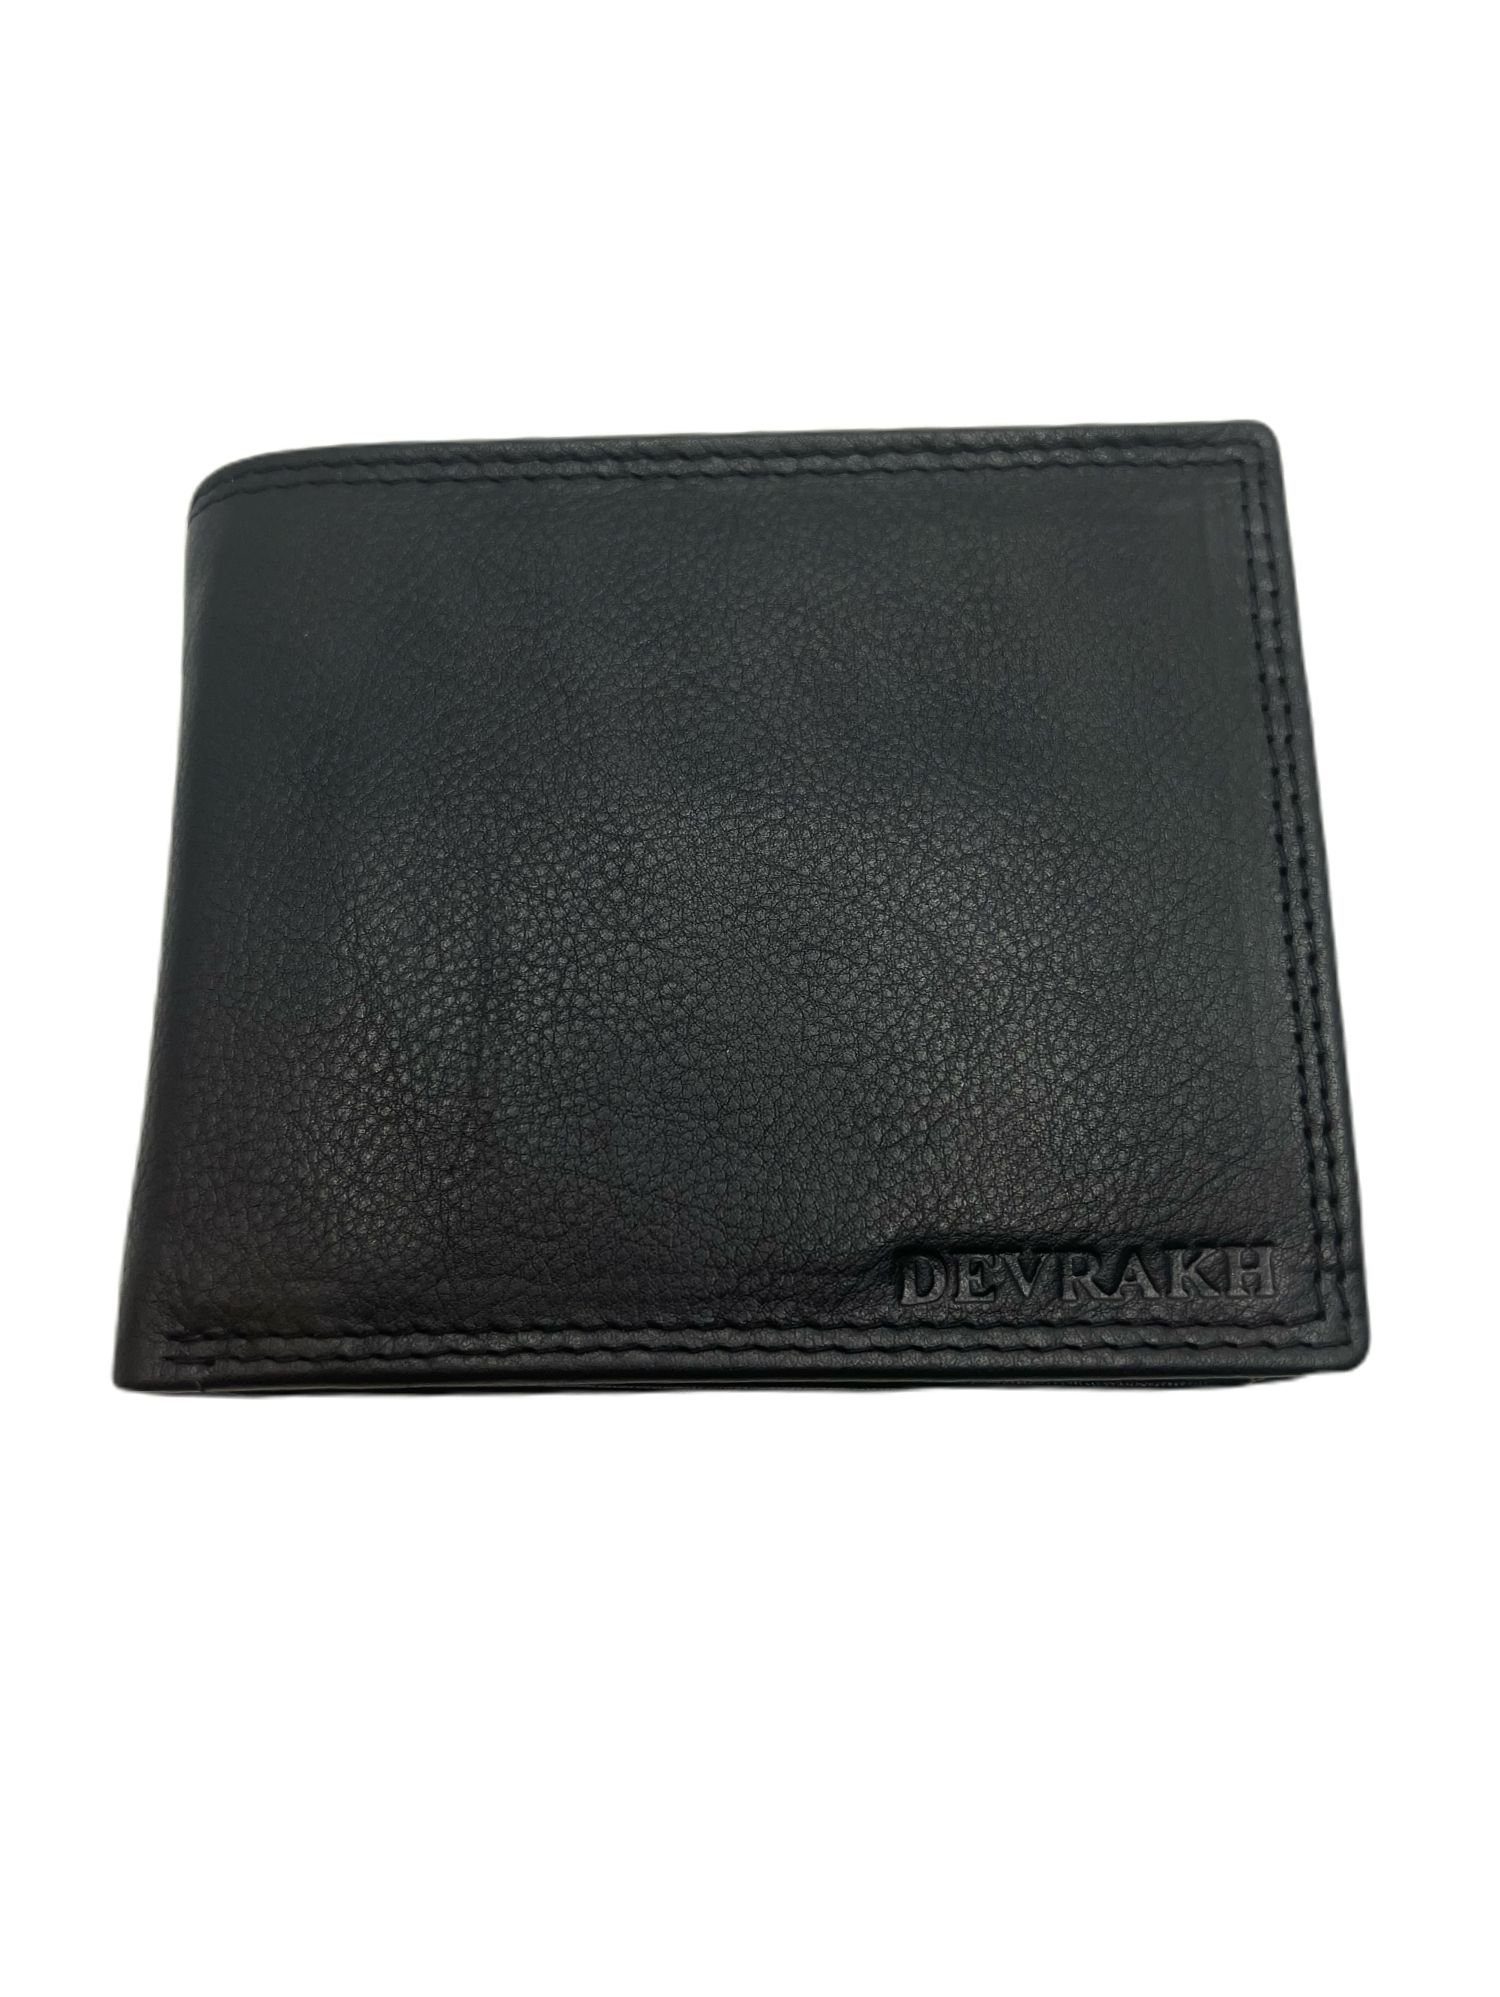 cofi1453 Geldbörse Herren Portemonnaie aus mit RFID 16 Nappa Leder Kartenfächer Schutz